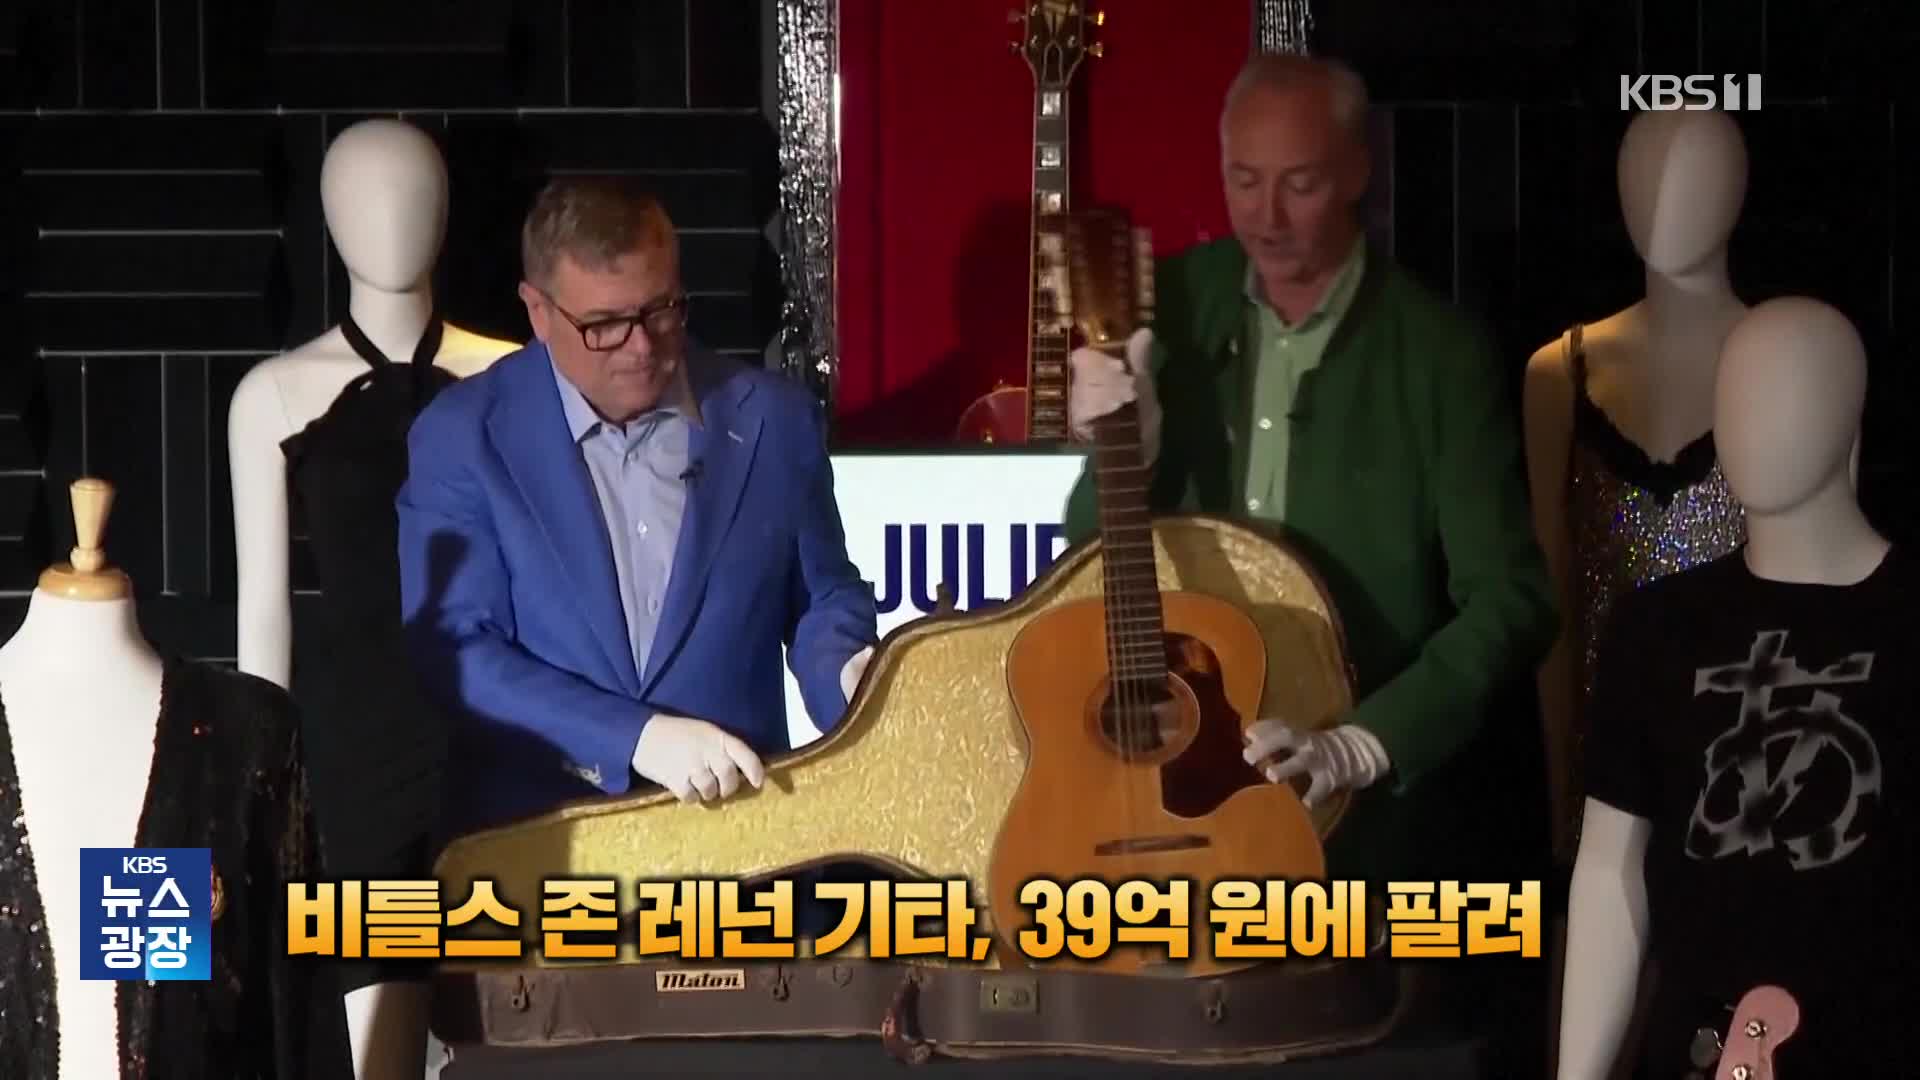 [잇슈 SNS] 50여 년 만에 찾은 존 레넌 기타, 39억 원에 팔려